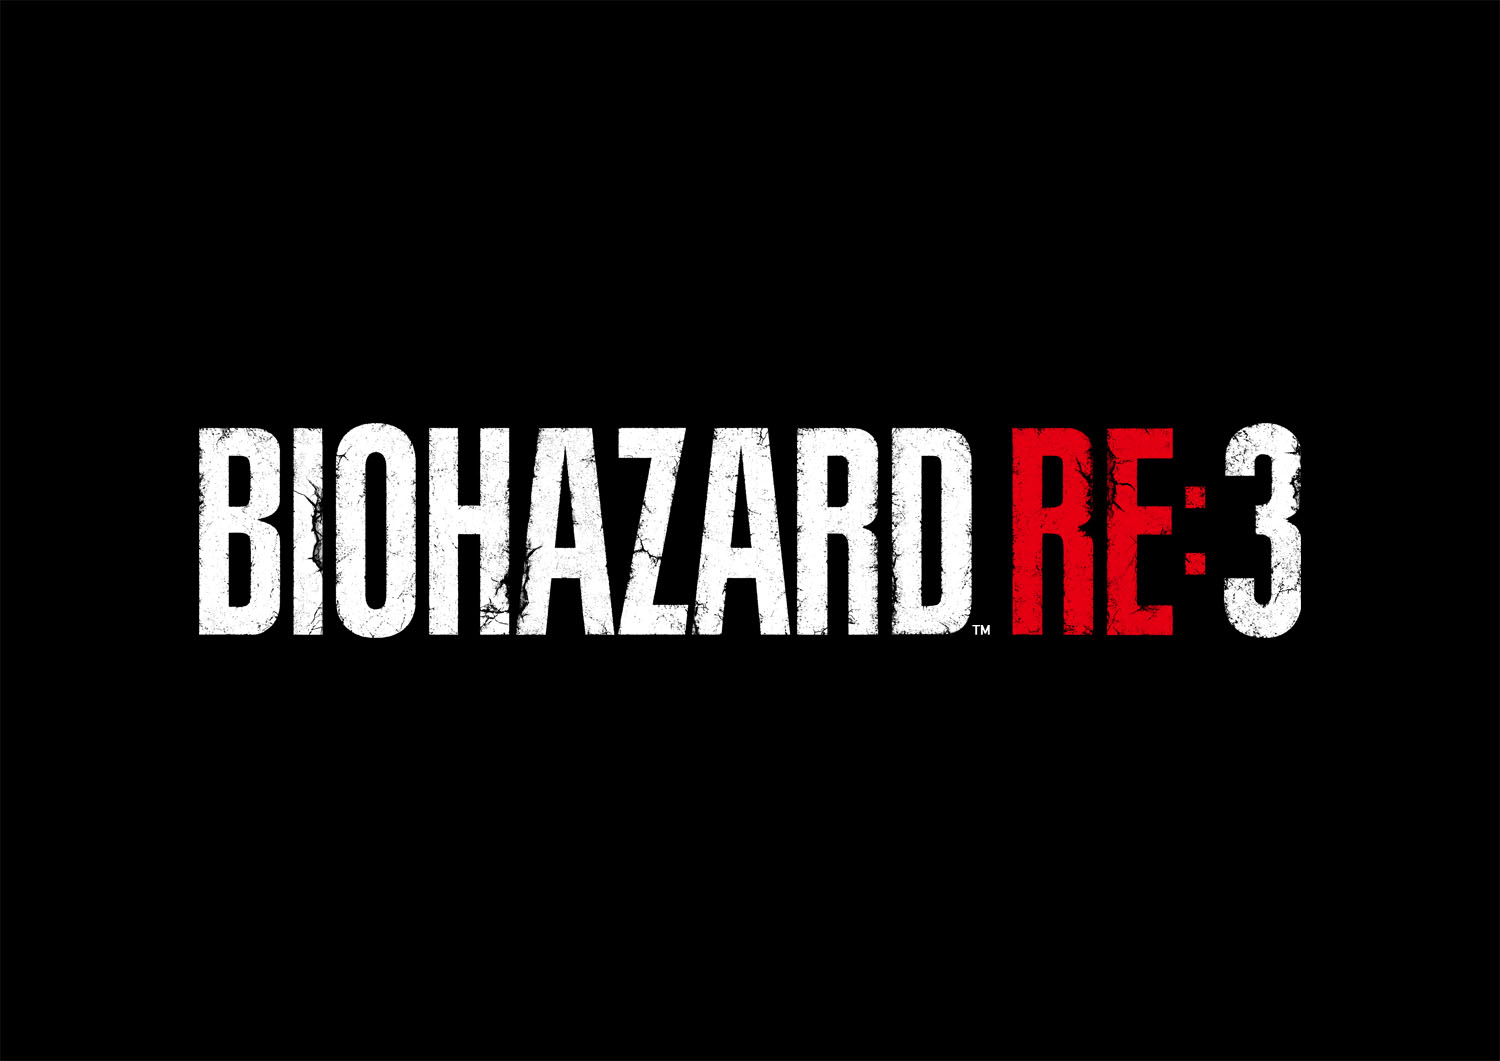 バイオハザード Re 3 モンスターハンターワールド アイスボーン ロックマン ゼロ ゼクス ダブルヒーローコレクション を紹介 株式会社カプコンのプレスリリース